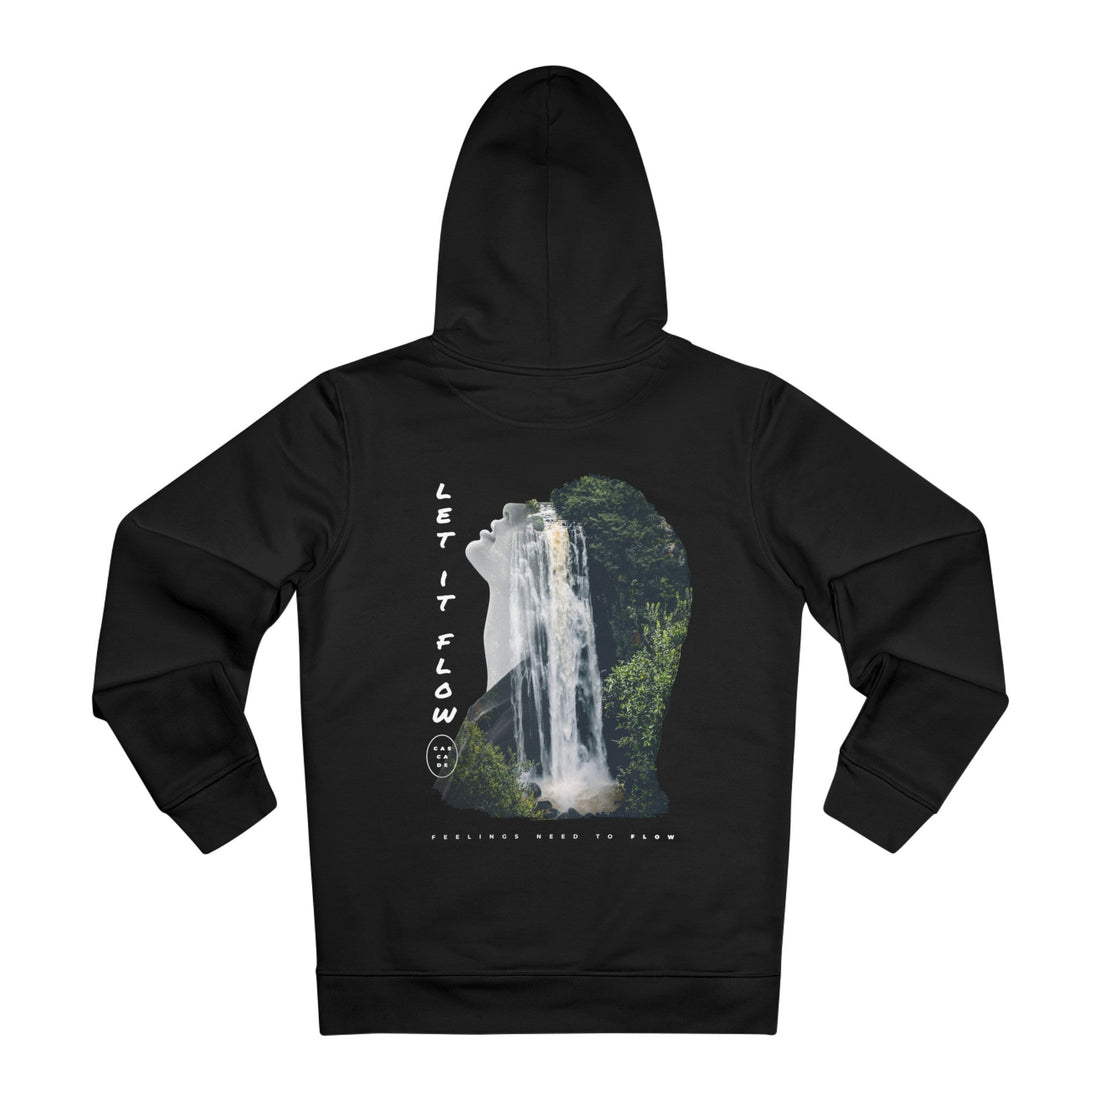 Printify Hoodie Black / M Woman Waterfall let it flow - Exposure Streetwear - Hoodie - Back Design